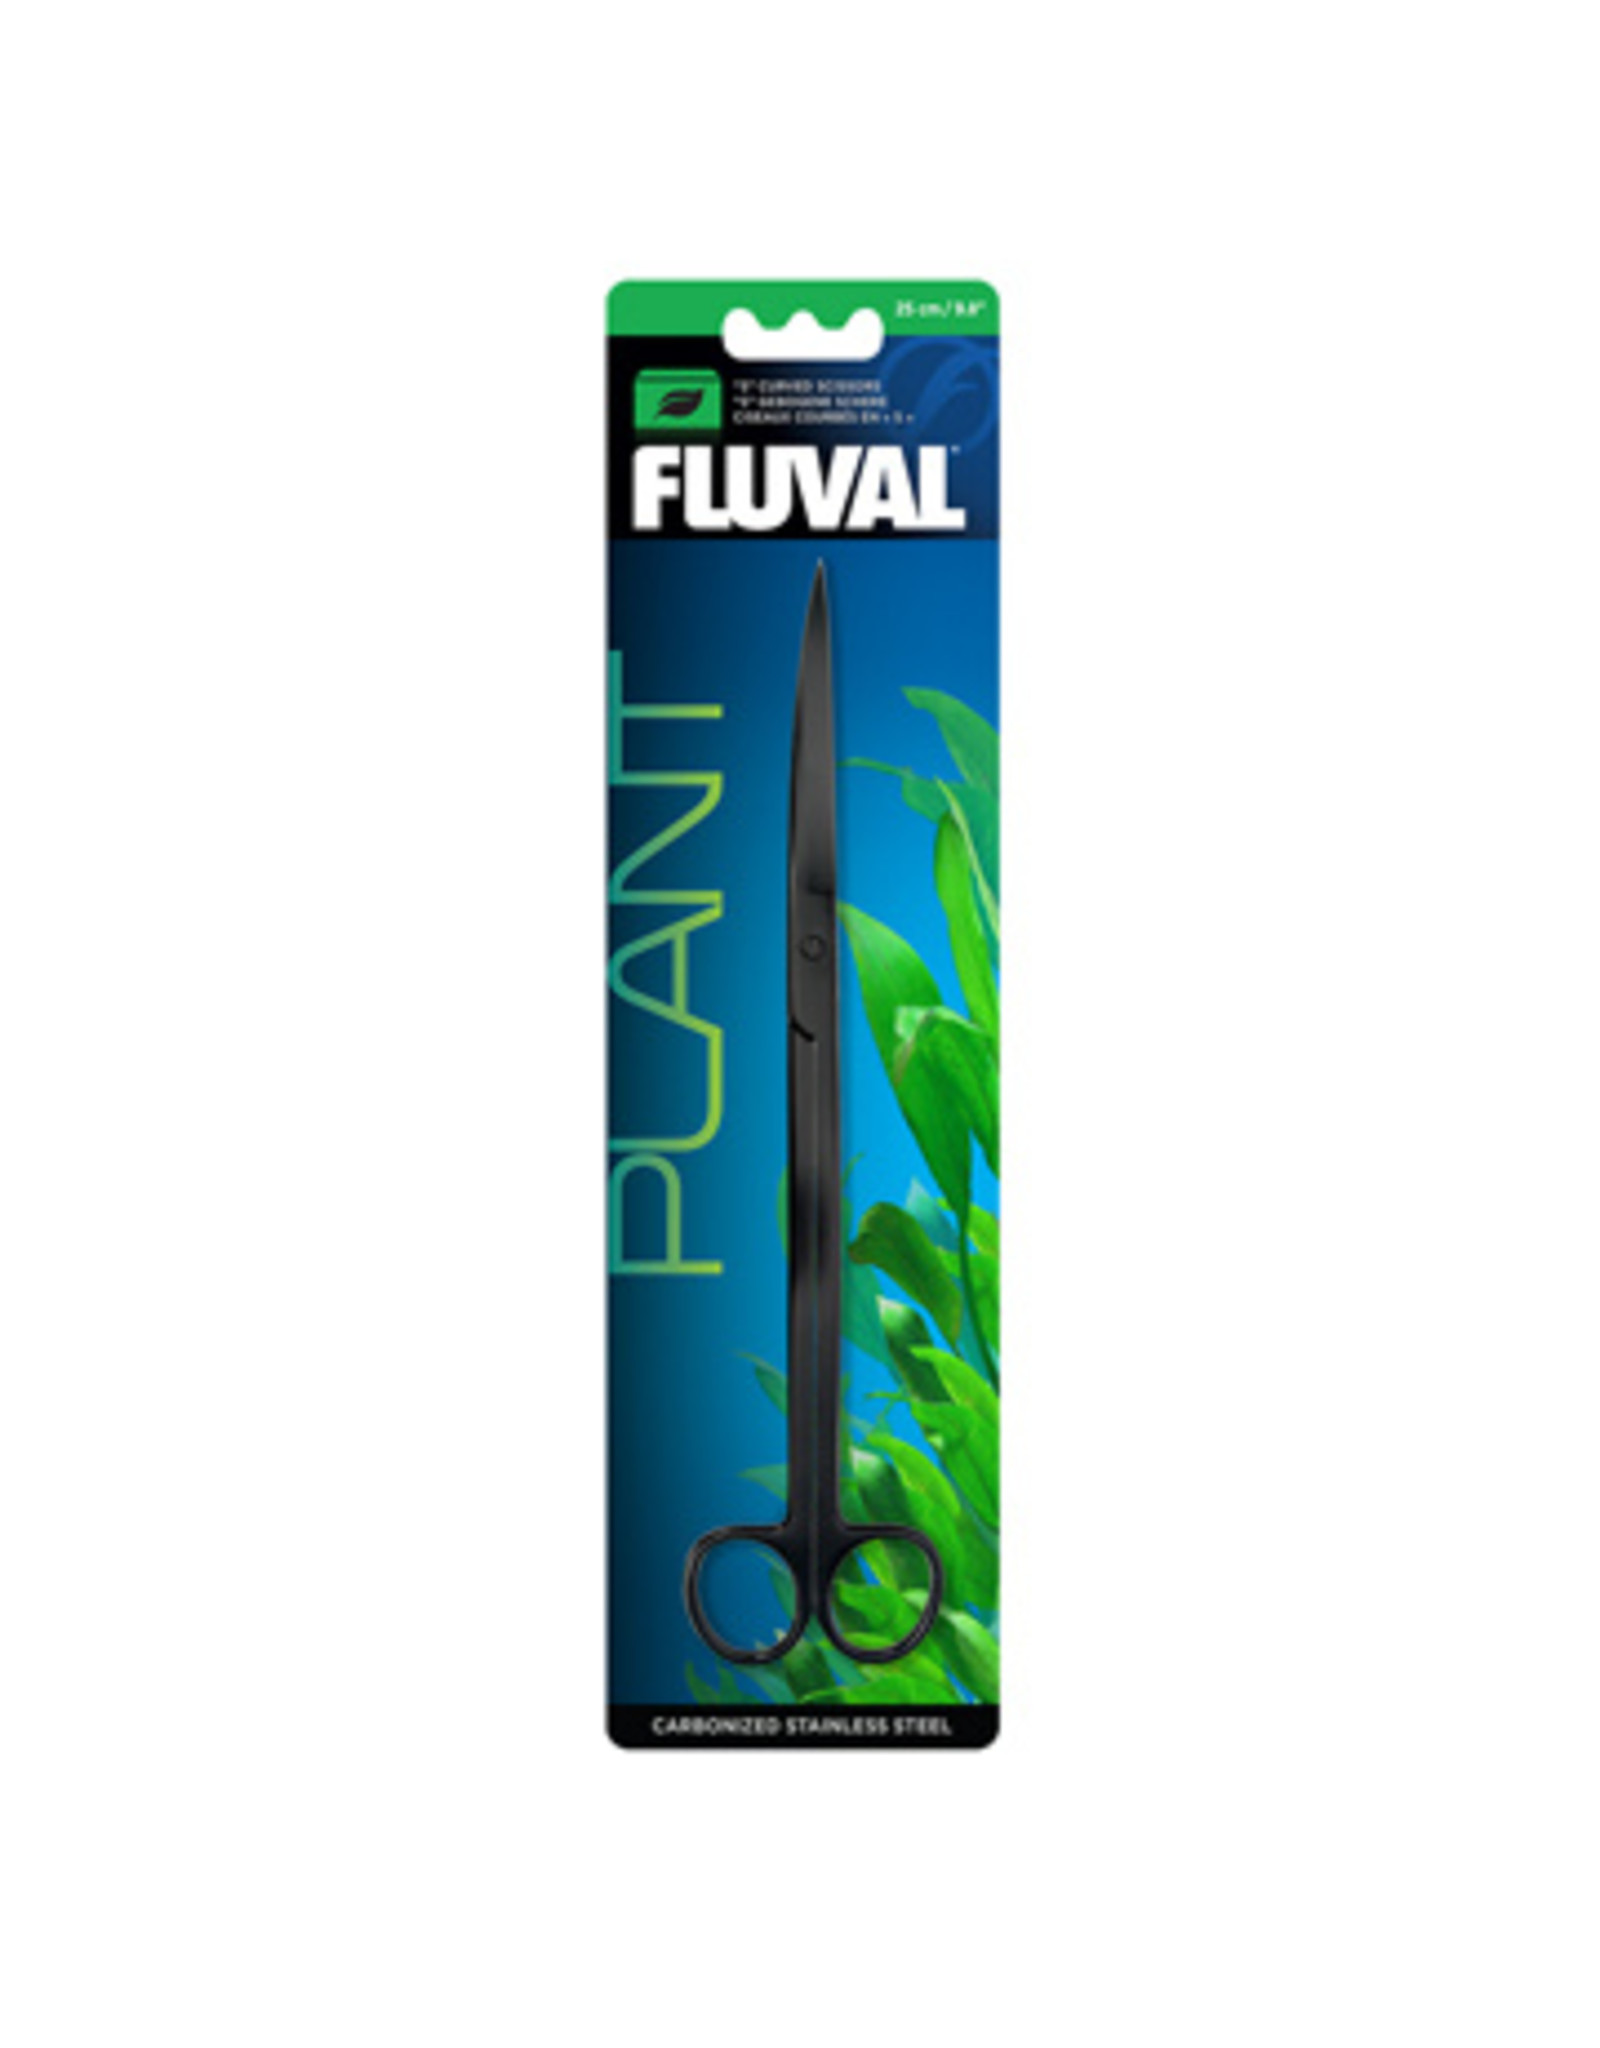 Fluval FLUVAL "S" Curved Scissor 25cm/9.8in